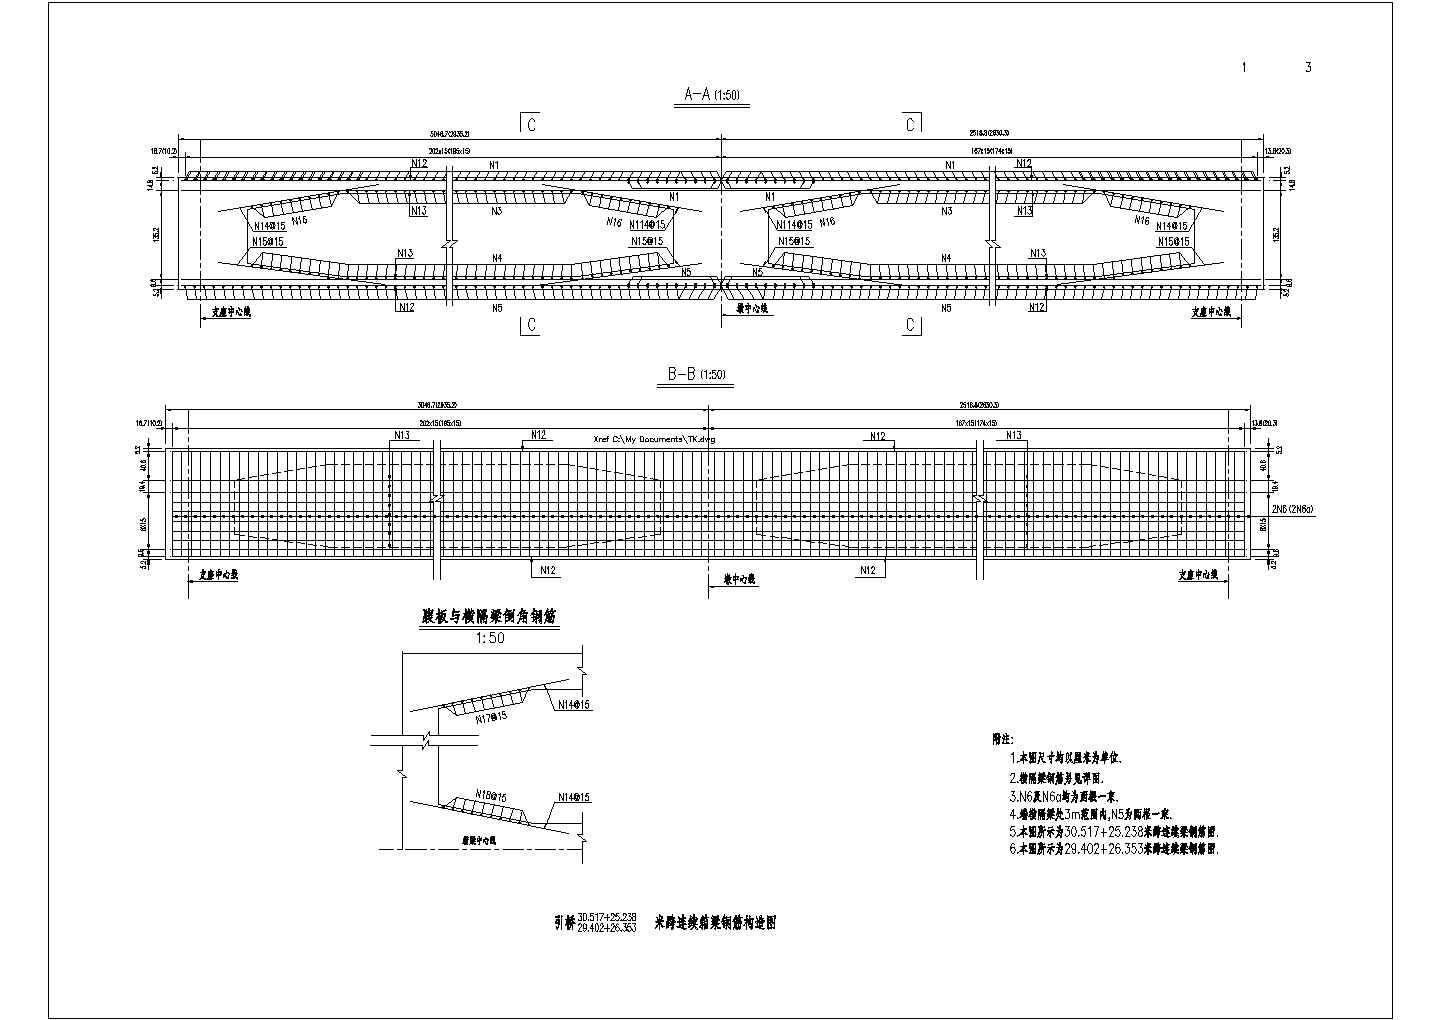 某长江路大桥CAD设计施工图全套桁架拱桥跨连续梁箱梁钢筋构造图